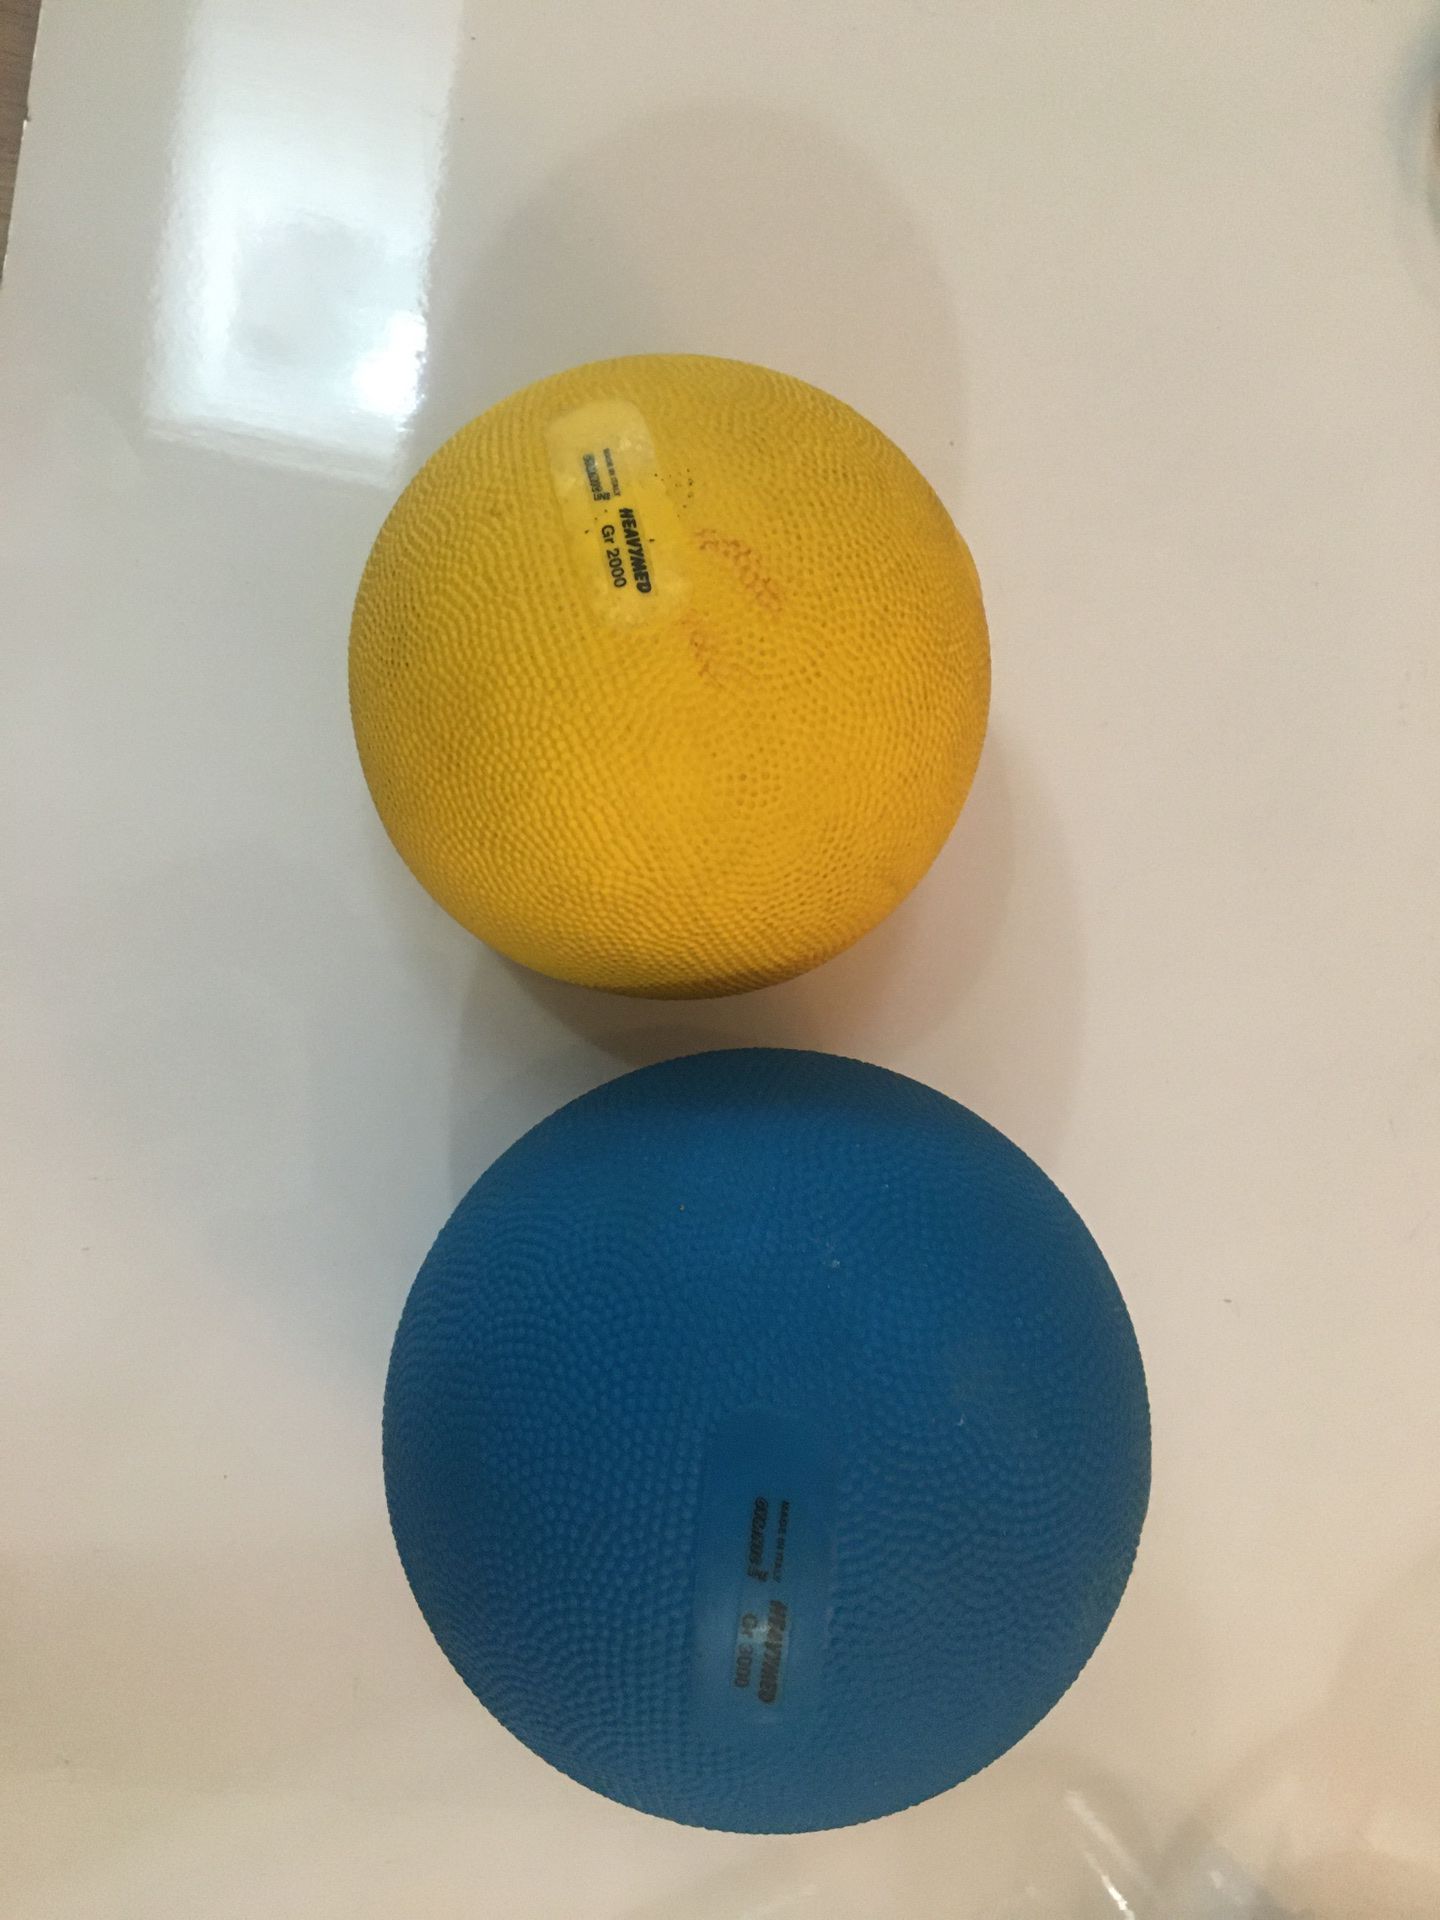 Medicine Balls for Exercise 2kg and 3kg